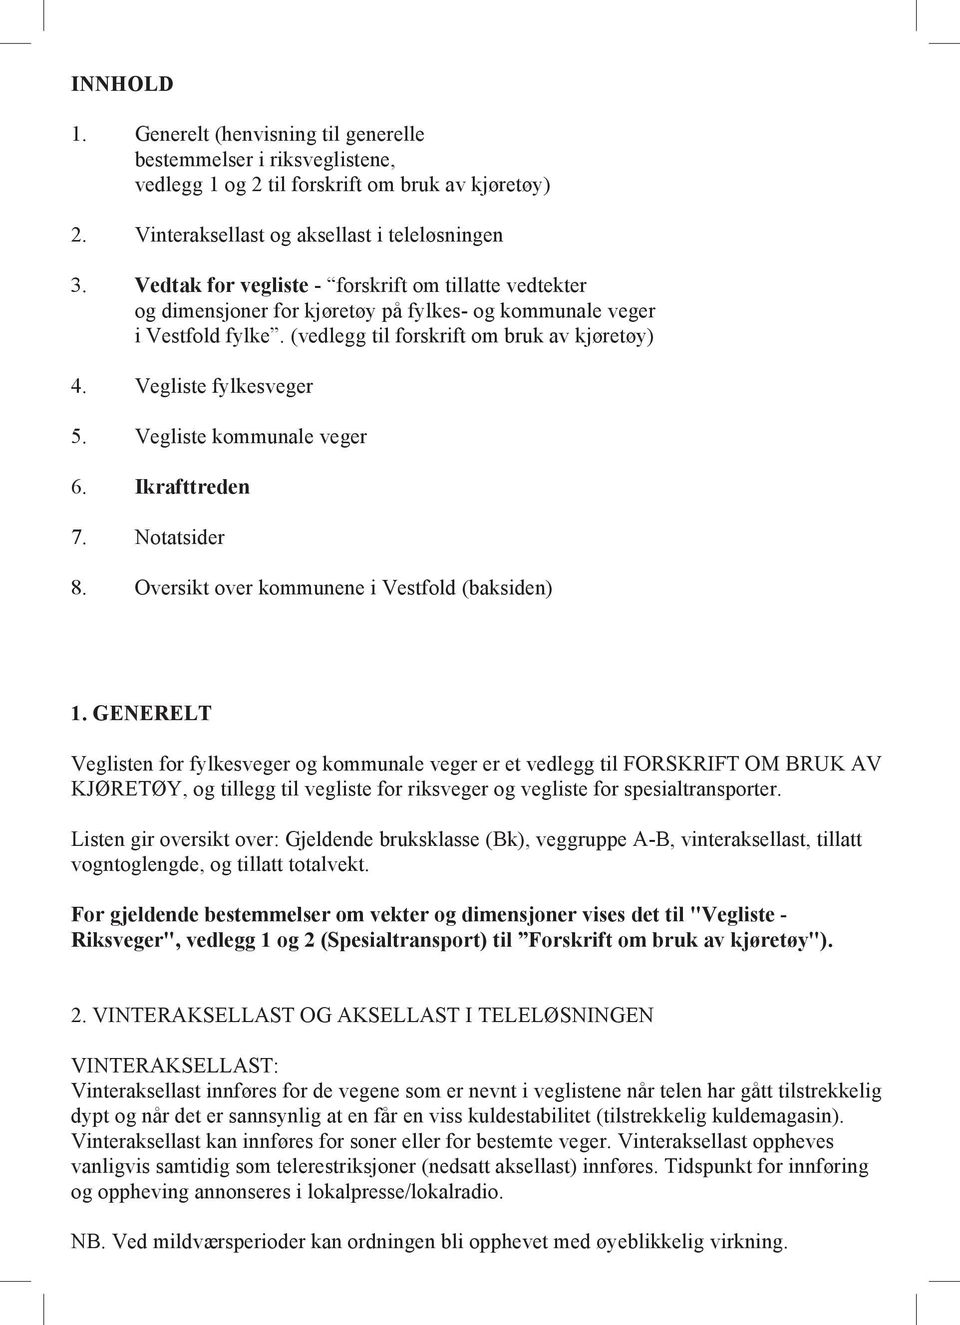 Vegliste kommunale veger 6. Ikrafttreden 7. Notatsider 8. Oversikt over kommunene i Vestfold (baksiden) 1.